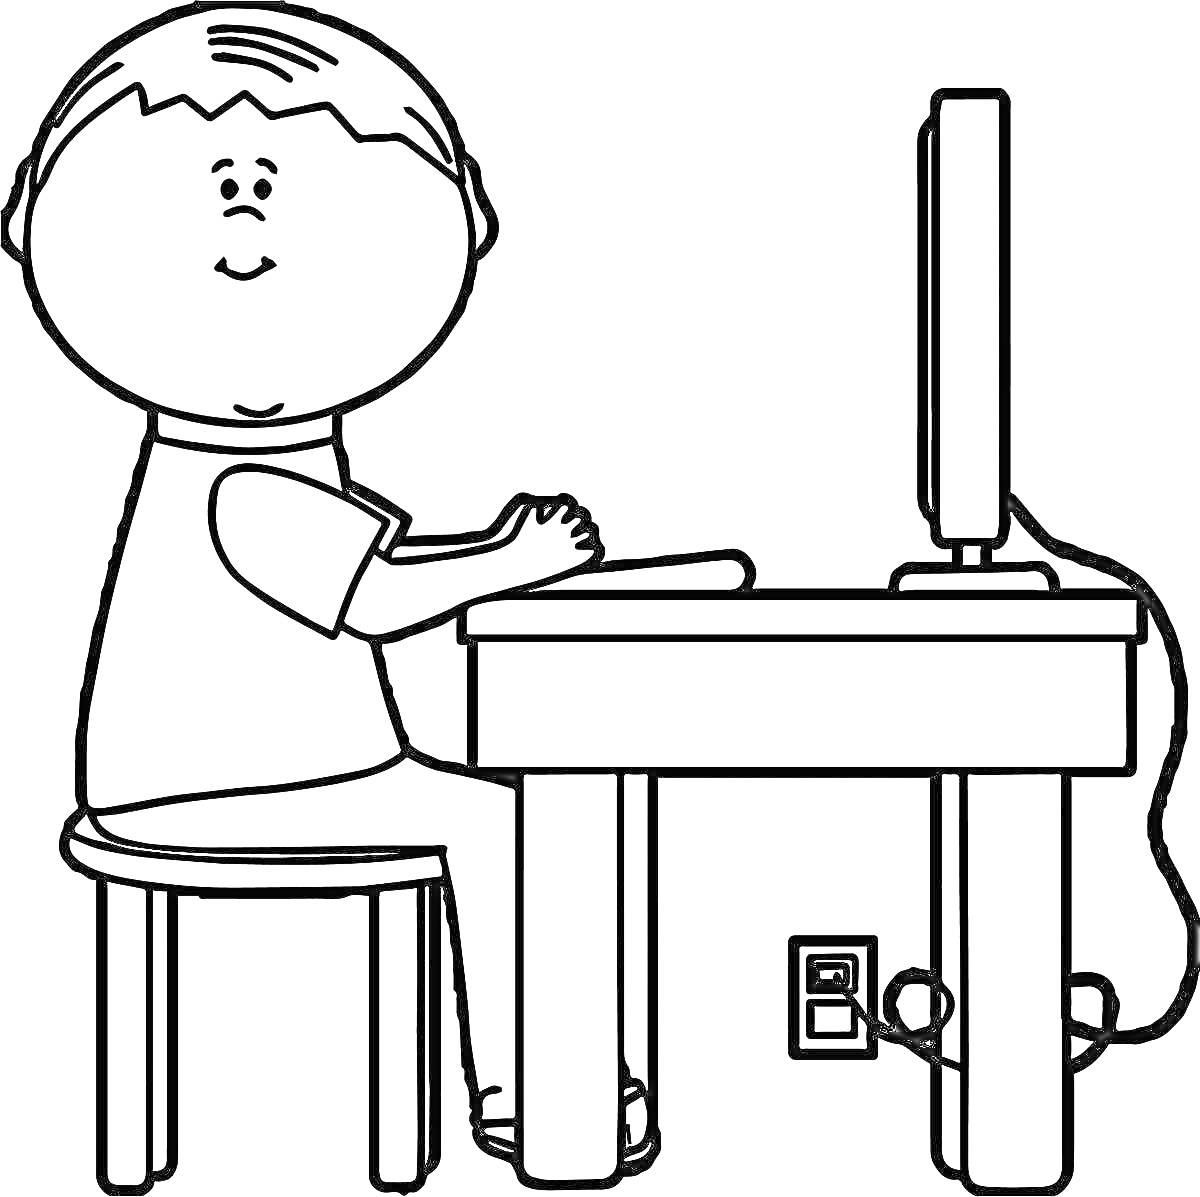 Раскраска Ребенок за компьютером, сидящий на стуле у стола с включенным монитором